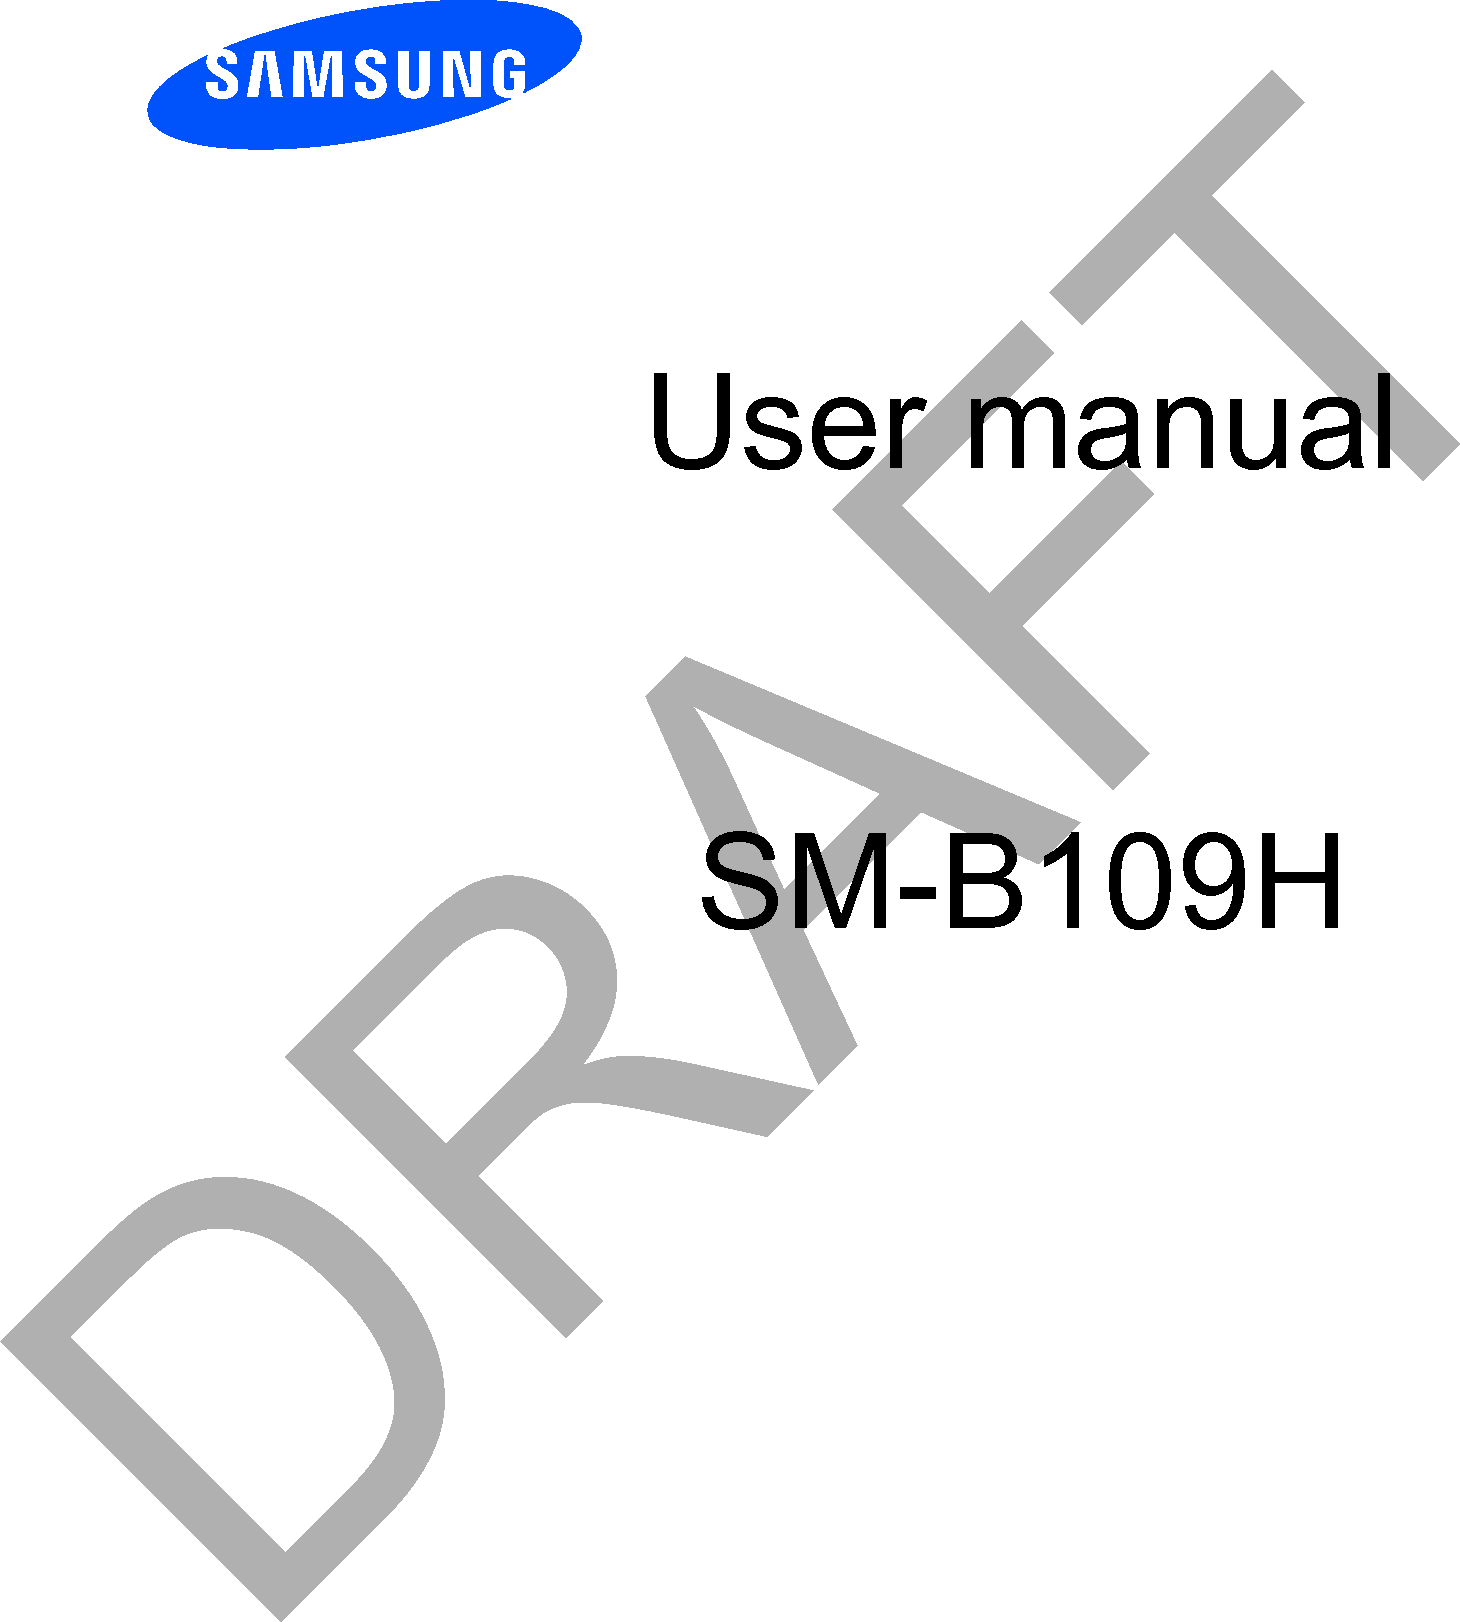 User manualSM-B109HDRAFT